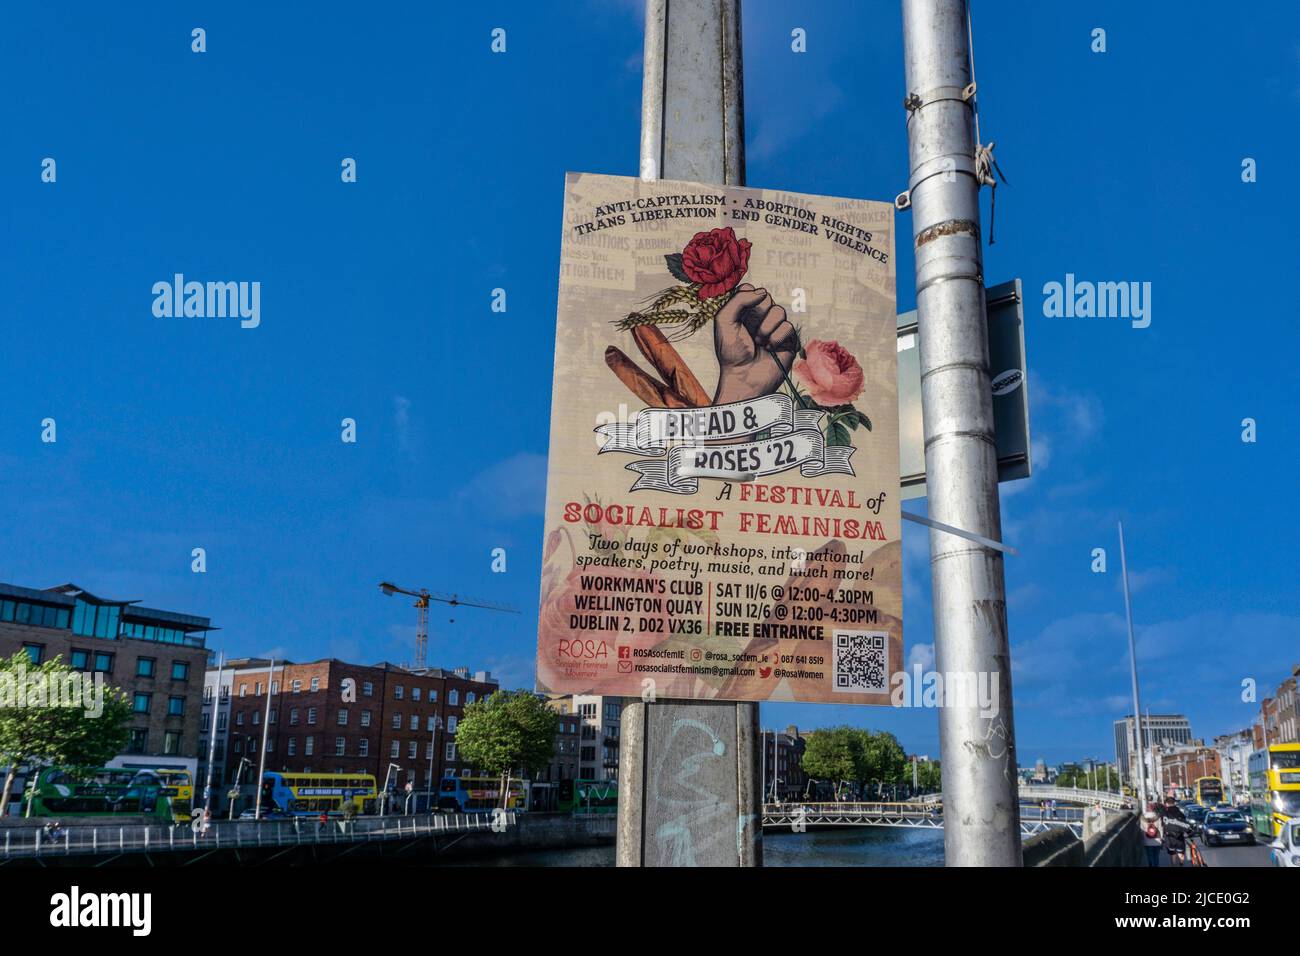 Ein Plakat für Bread and Roses 22, ein Festival des sozialistischen Feminismus, in Dublin, Irland. Stockfoto